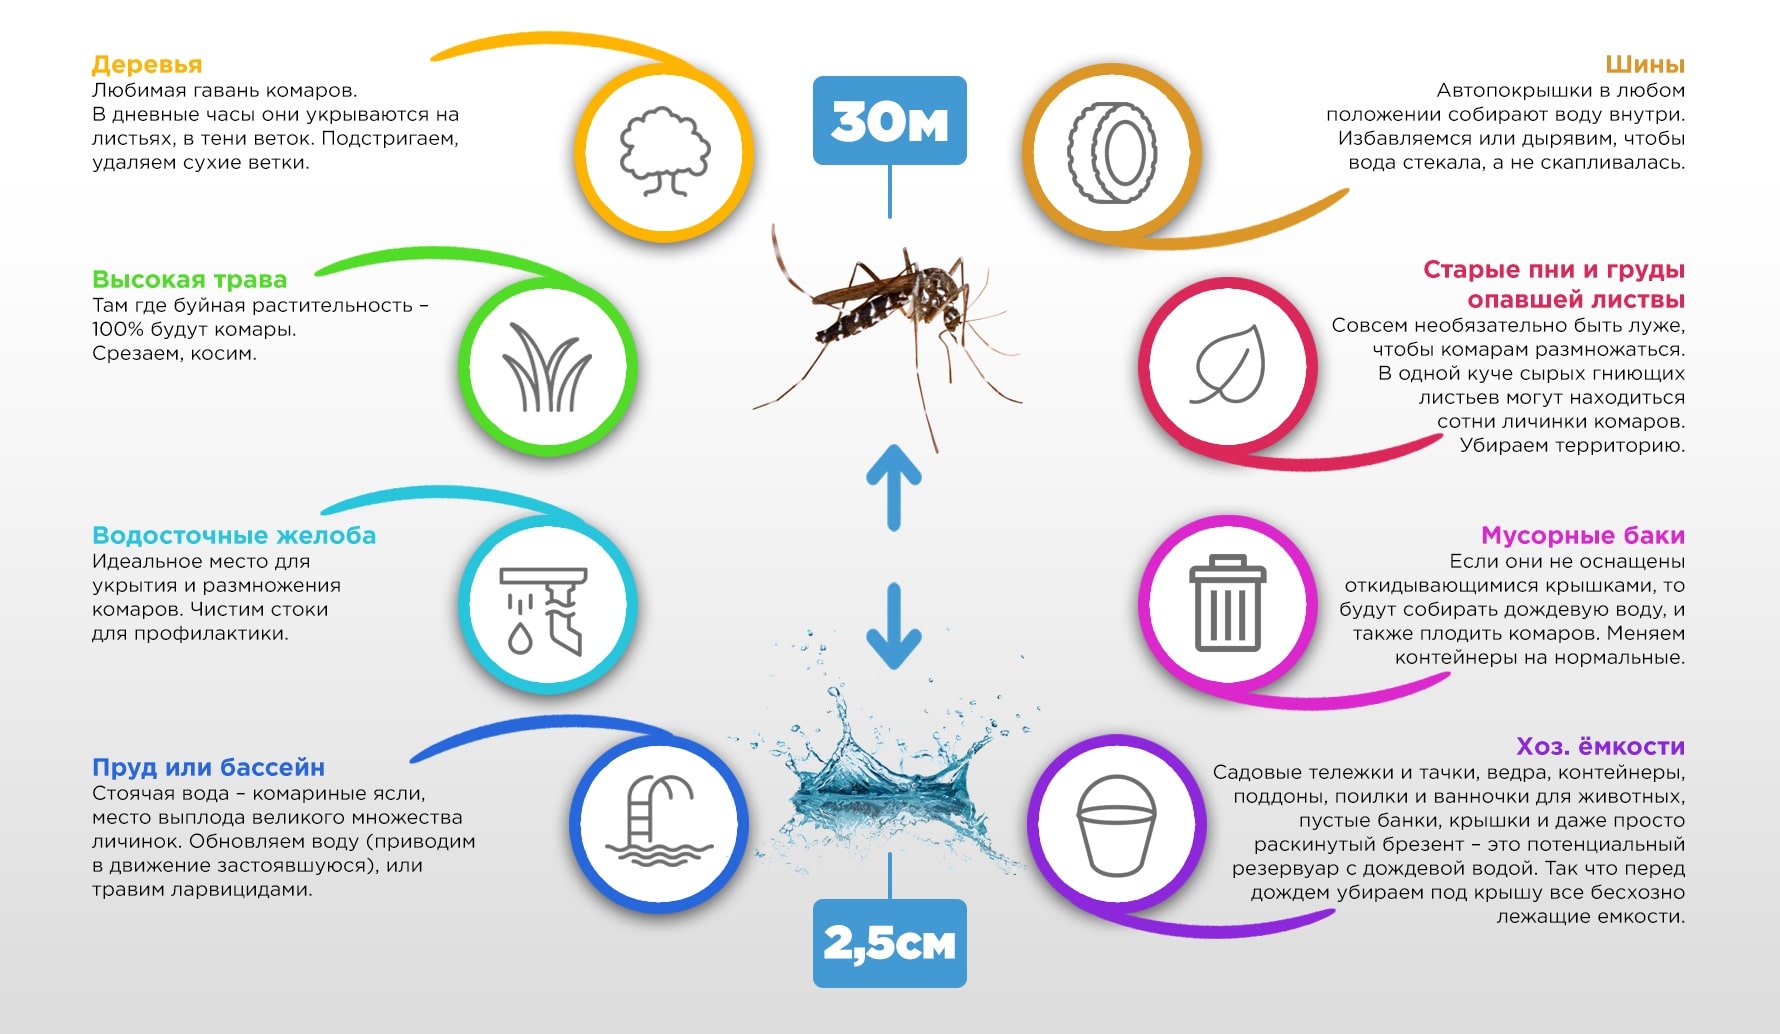 Откуда берутся комары и где живут их личинки – круговая схема